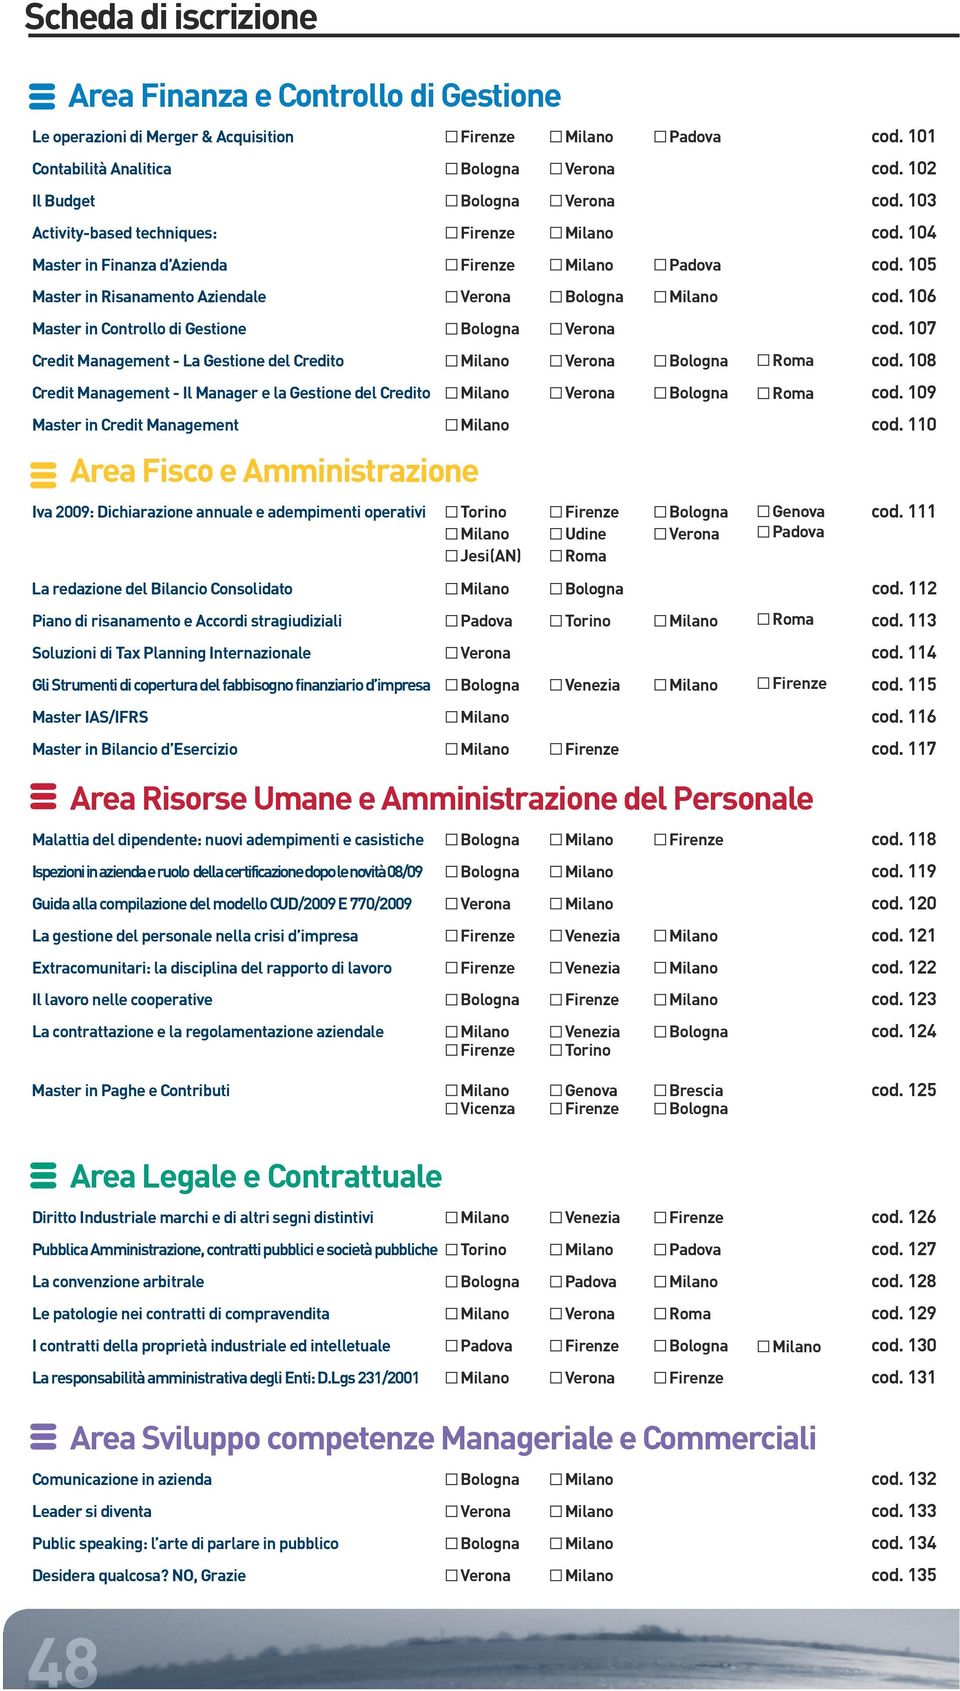 105 Master in Risanamento Aziendale Verona Bologna Milano cod. 106 Master in Controllo di Gestione Bologna Verona cod. 107 Credit Management - La Gestione del Credito Milano Verona Bologna Roma cod.